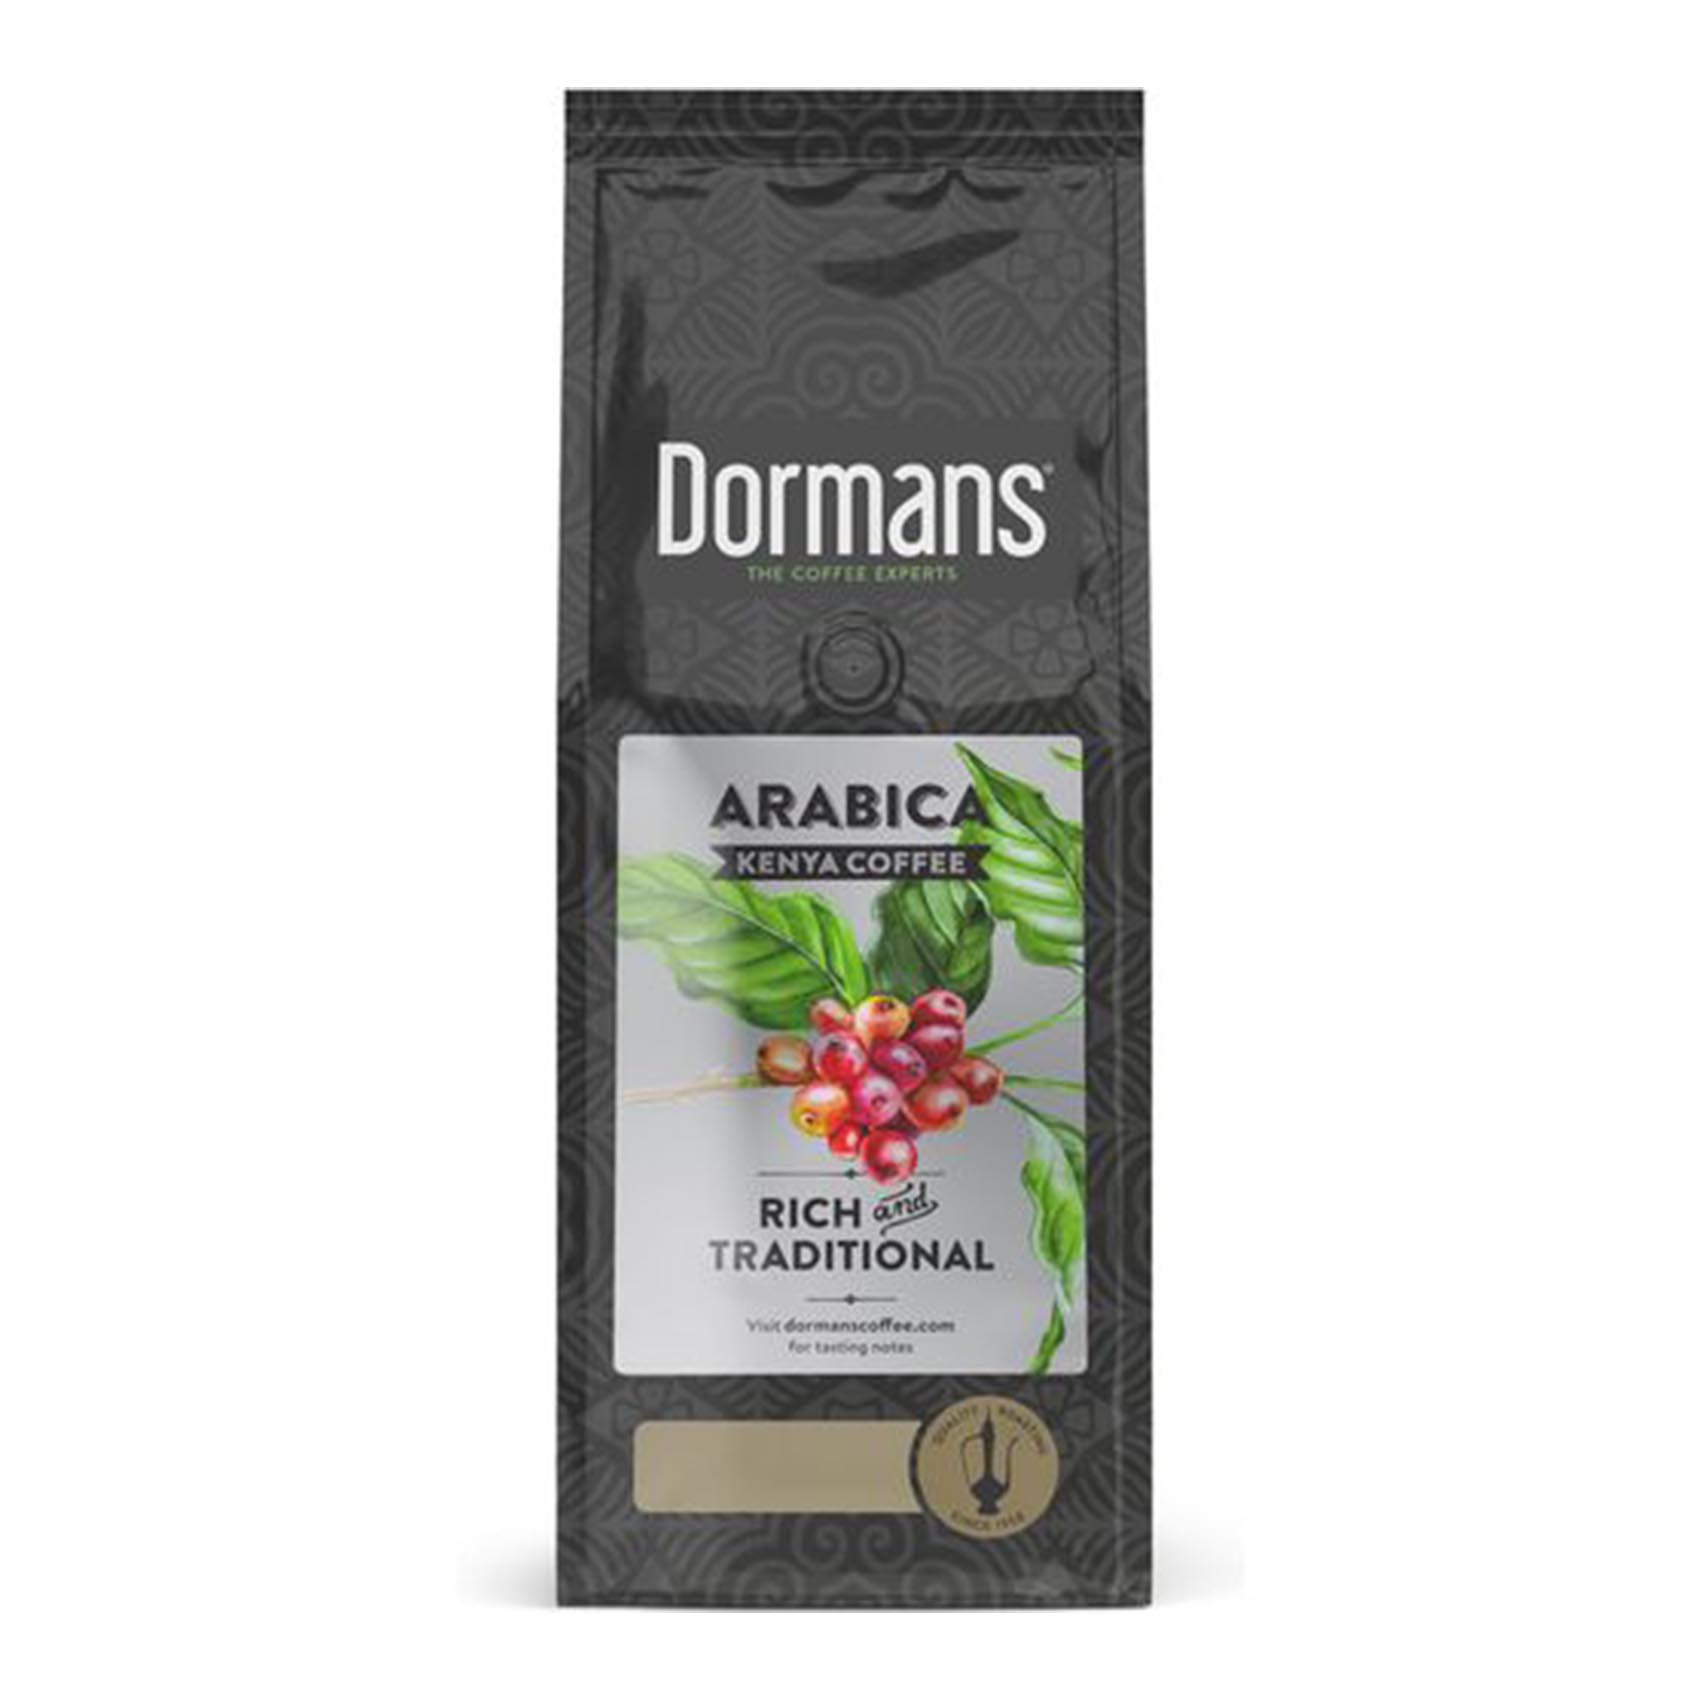 Dormans Arabica Rich Traditional Kenya Coffee 375g